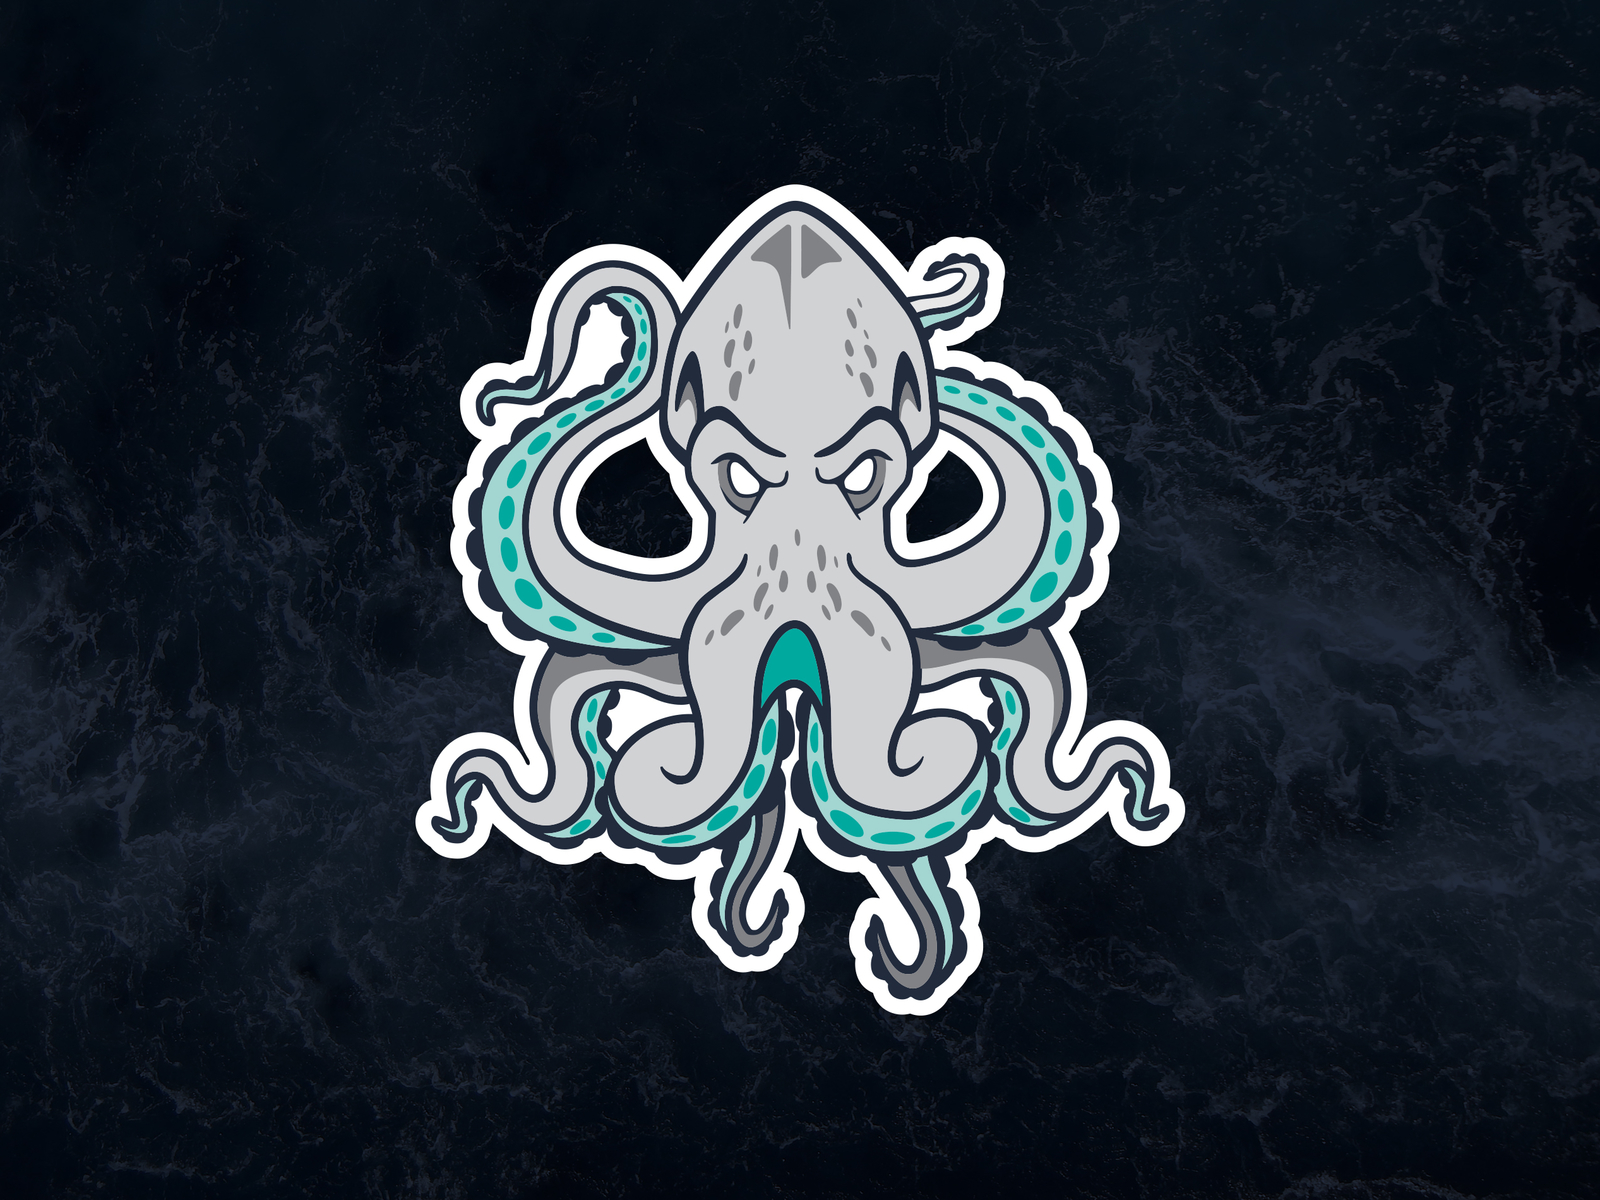 Kraken Mascot Logo by TJ Marchesani on Dribbble